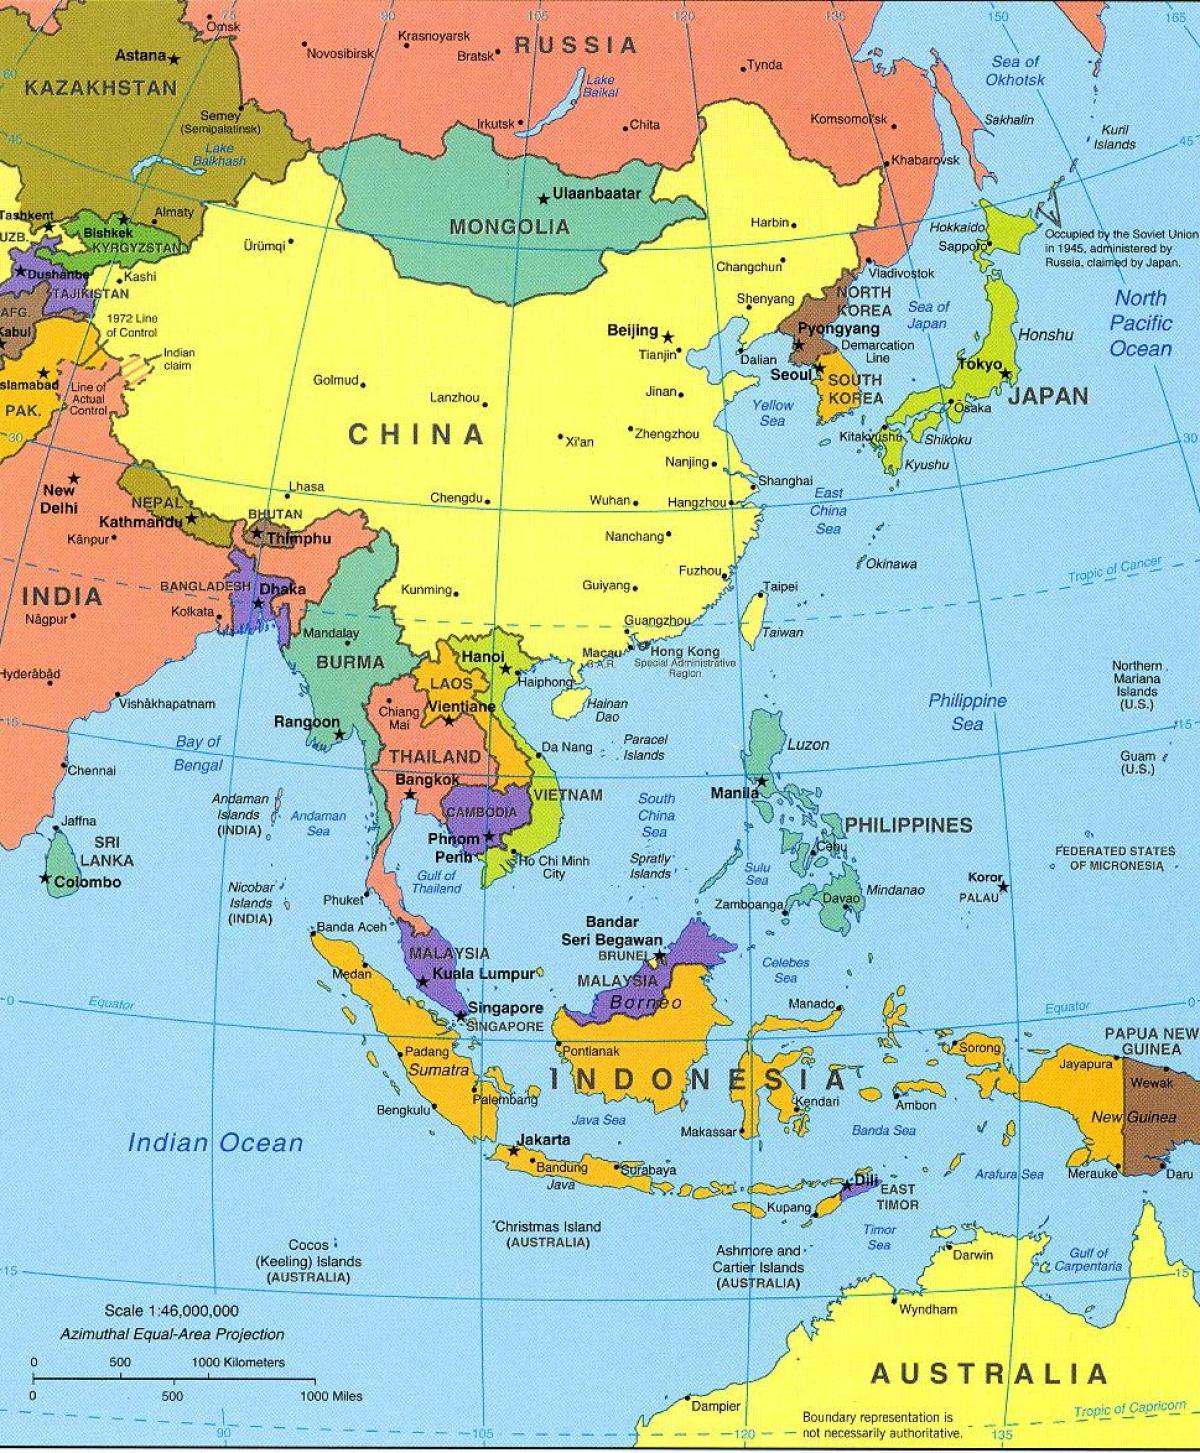 Ταϊπέι θέση στον παγκόσμιο χάρτη